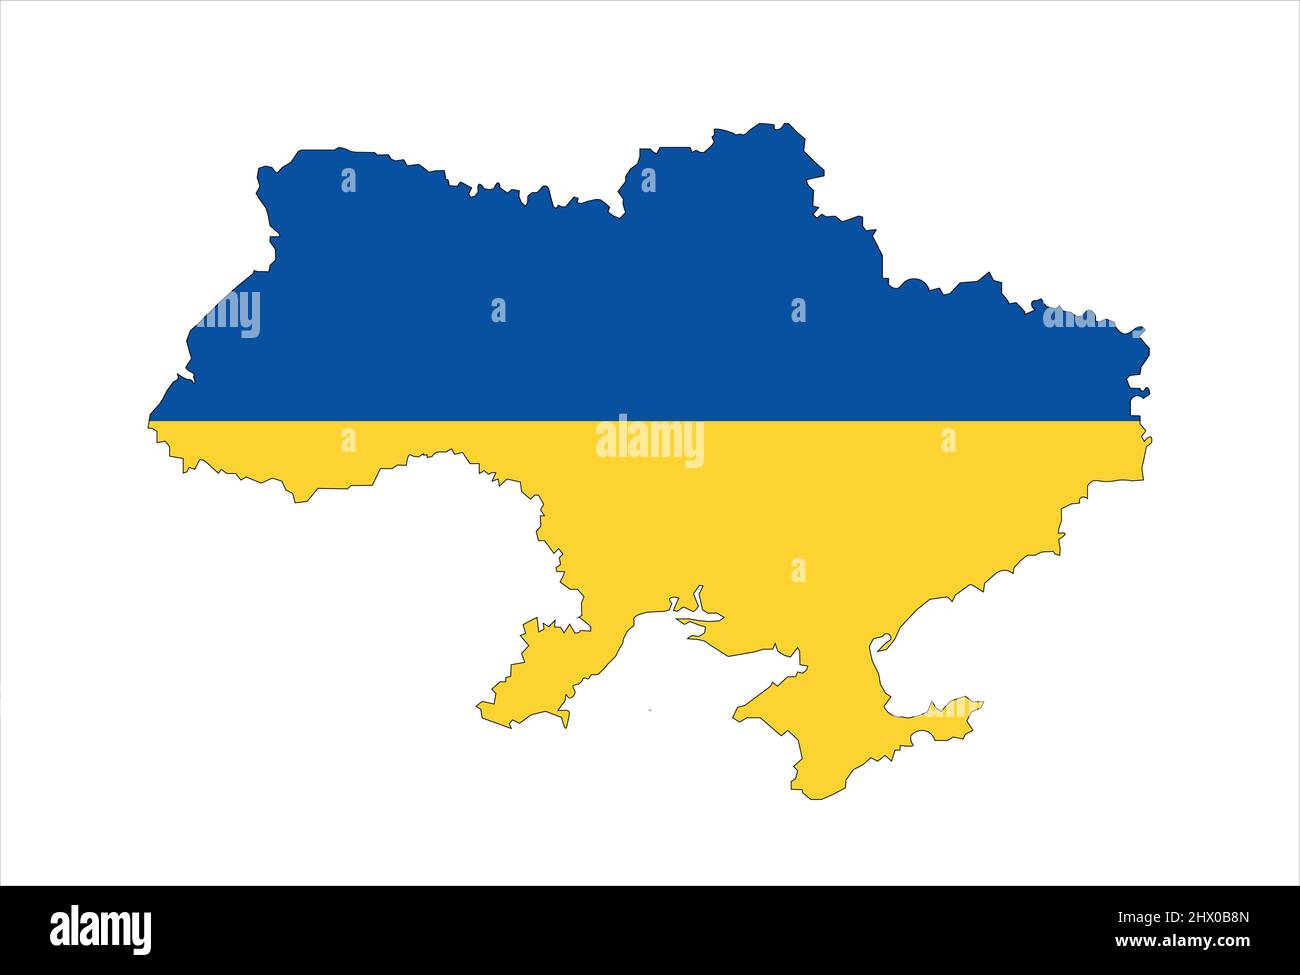 Karte der Ukraine und ukrainische Flagge. Vektorgrafik Stock Vektor